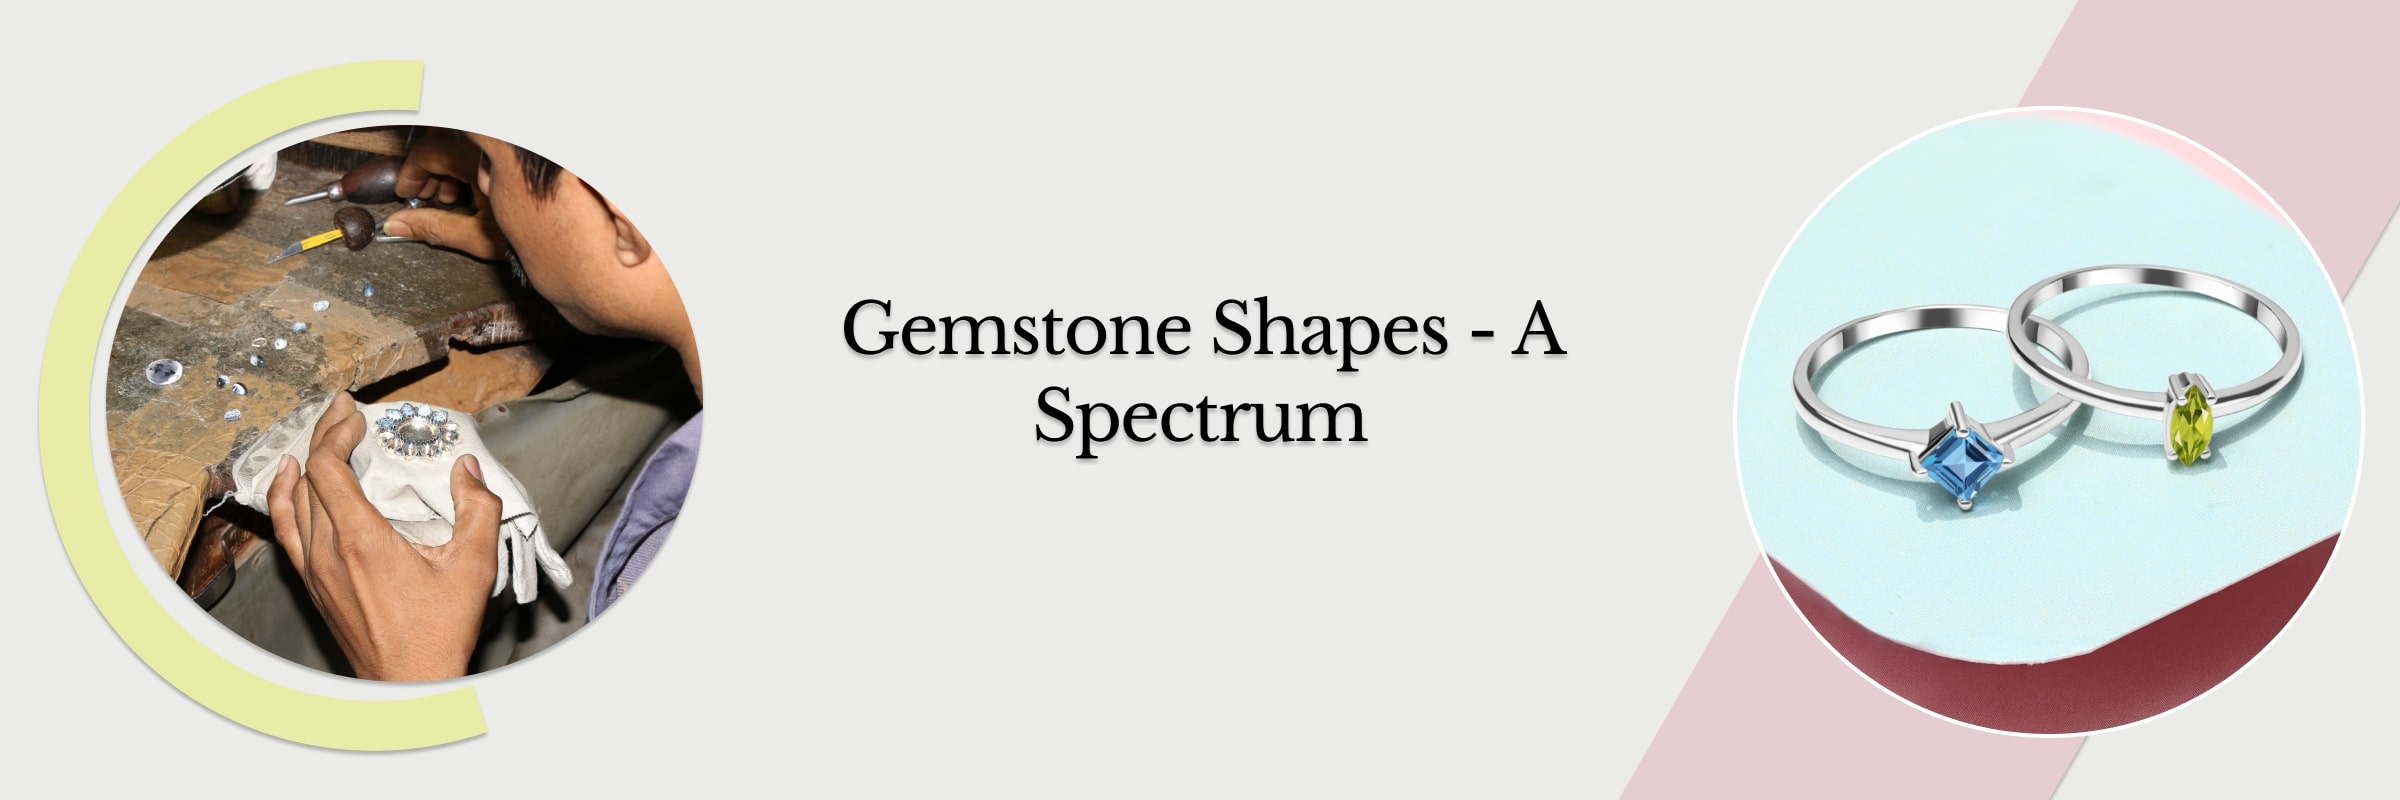 Gemstone Shapes